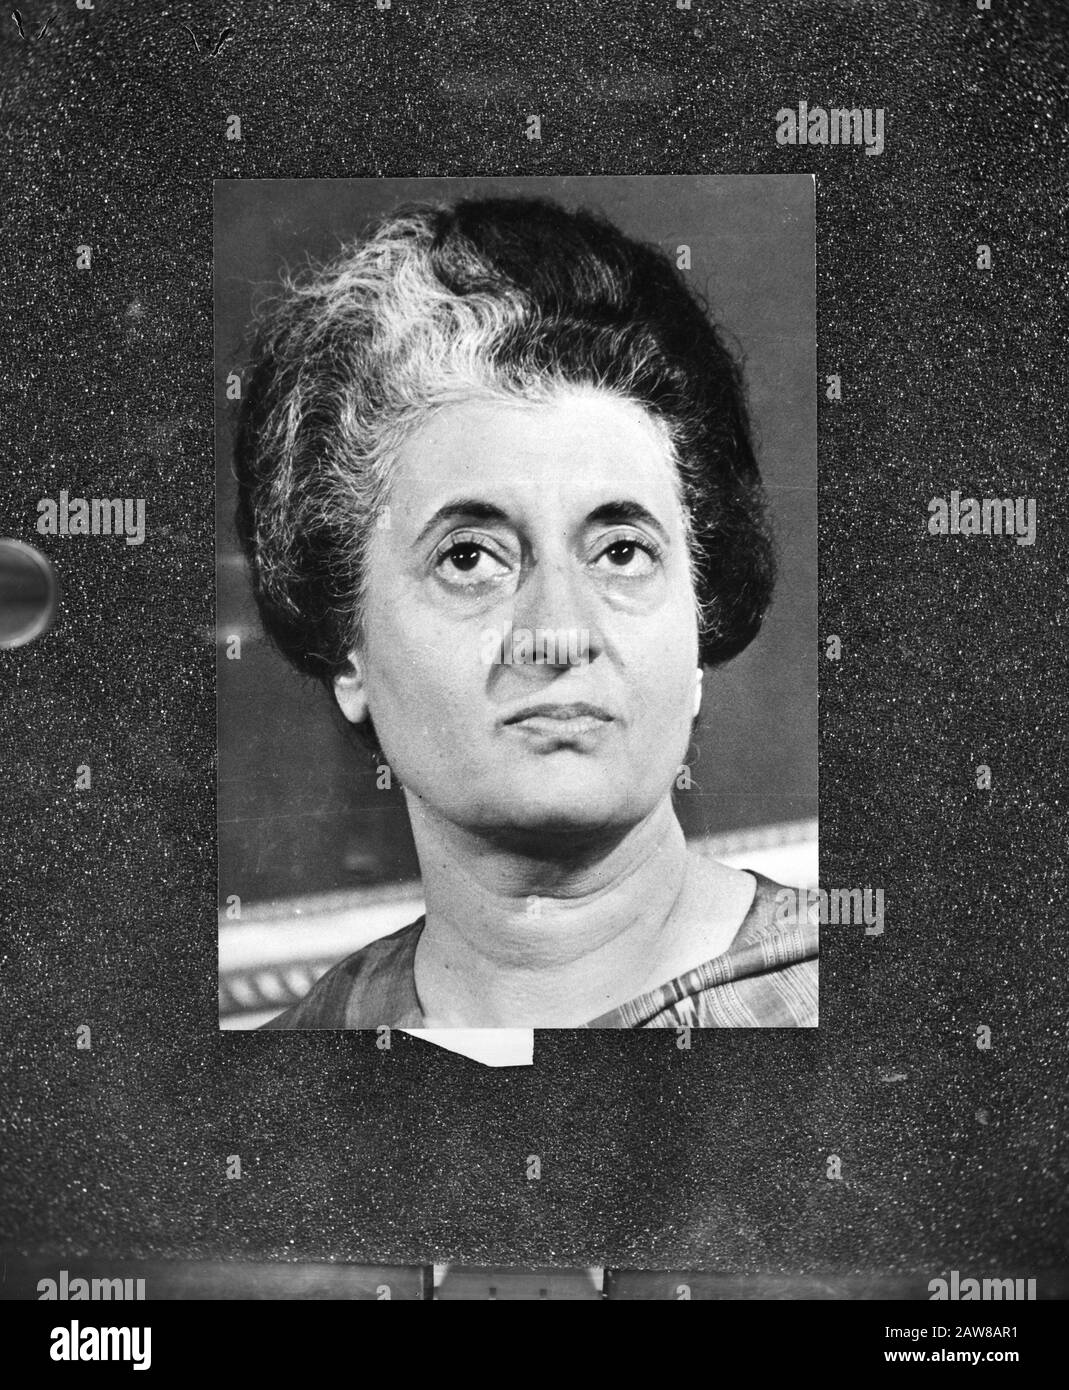 Wahlen in Indien Premierministerin Indira Gandhi (Kongresspartei) Datum: 21. März 1977 Ort: Indien Schlüsselwörter: Premierminister, Politiker, Porträts, Wahlperson Name: Gandhi, Indira Stockfoto